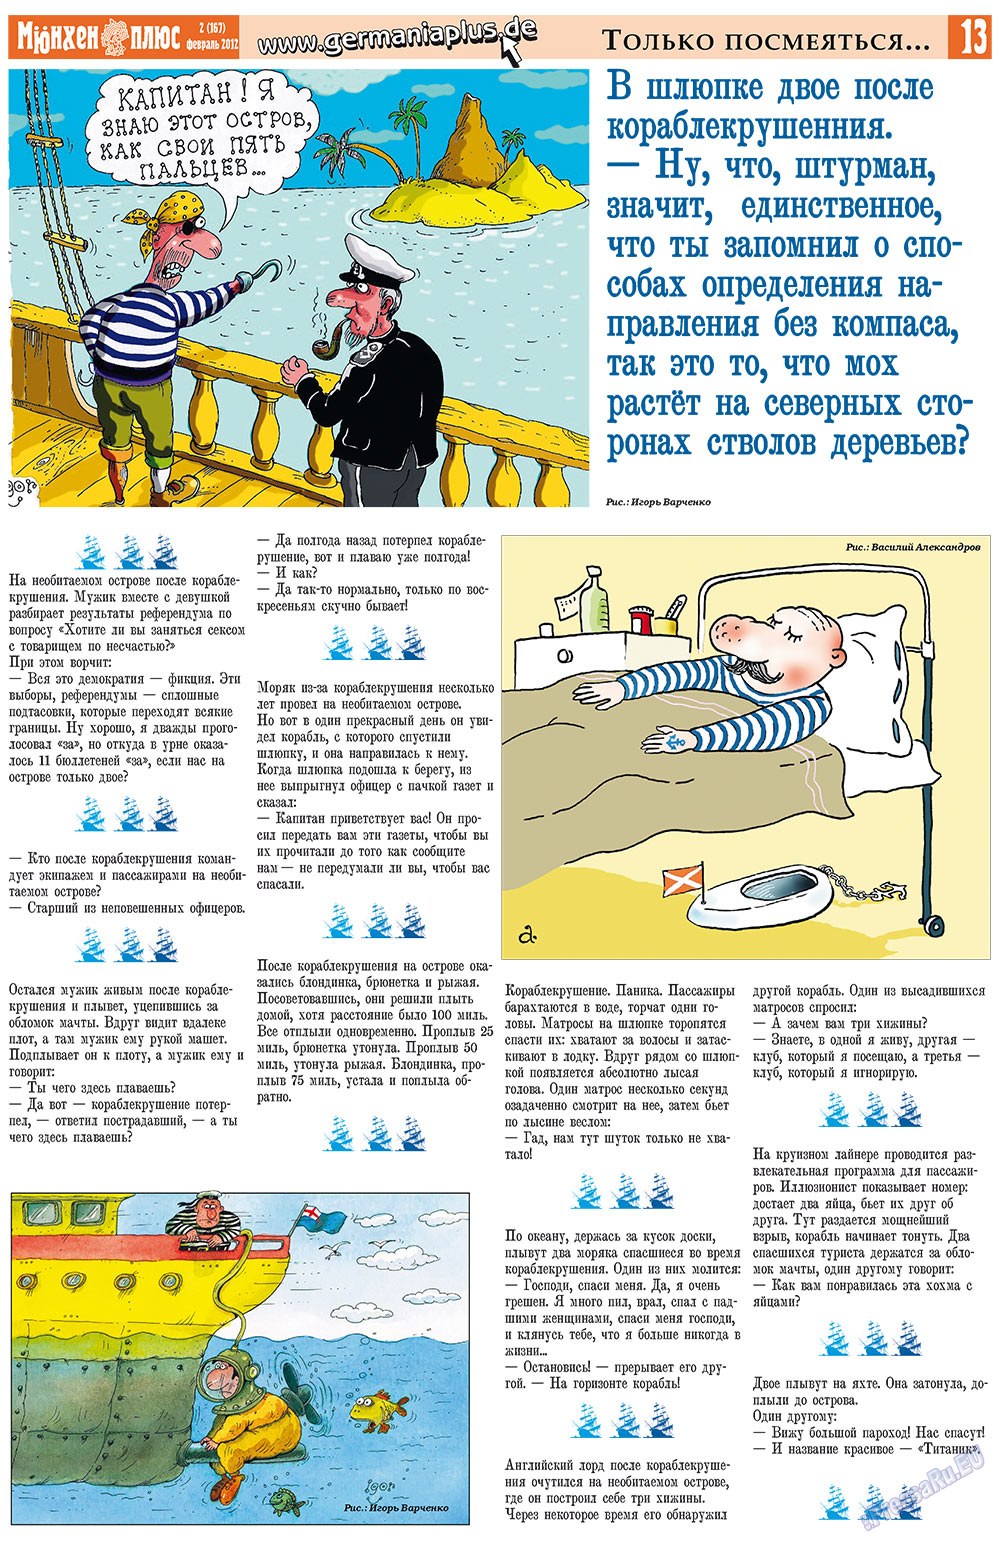 Германия плюс, газета. 2012 №2 стр.13